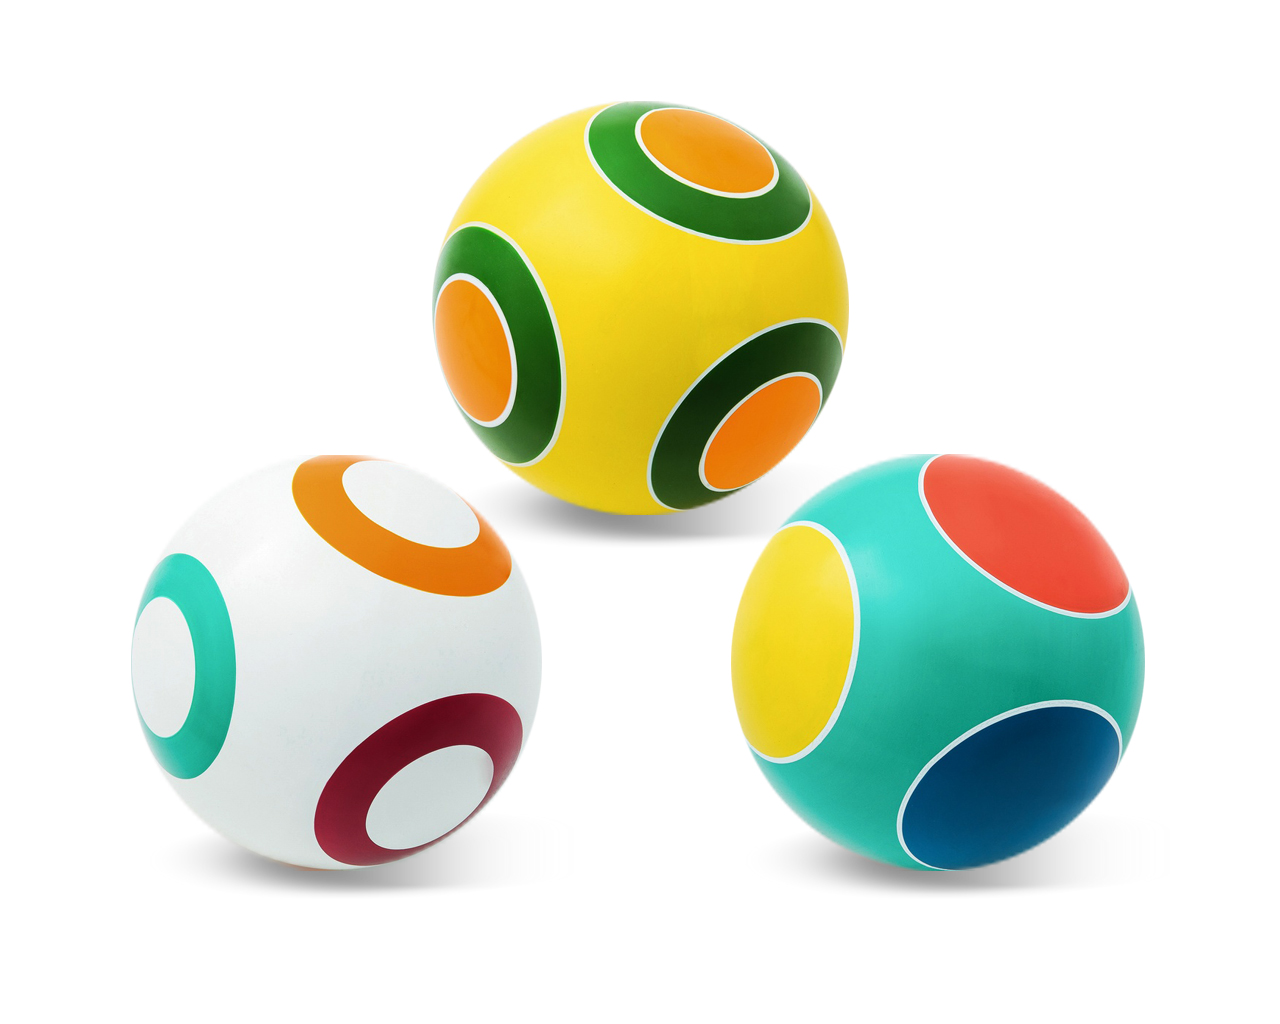 Мяч резиновый диаметр 200 мм. серия Кружочки, Чебоксары, Р3-200 